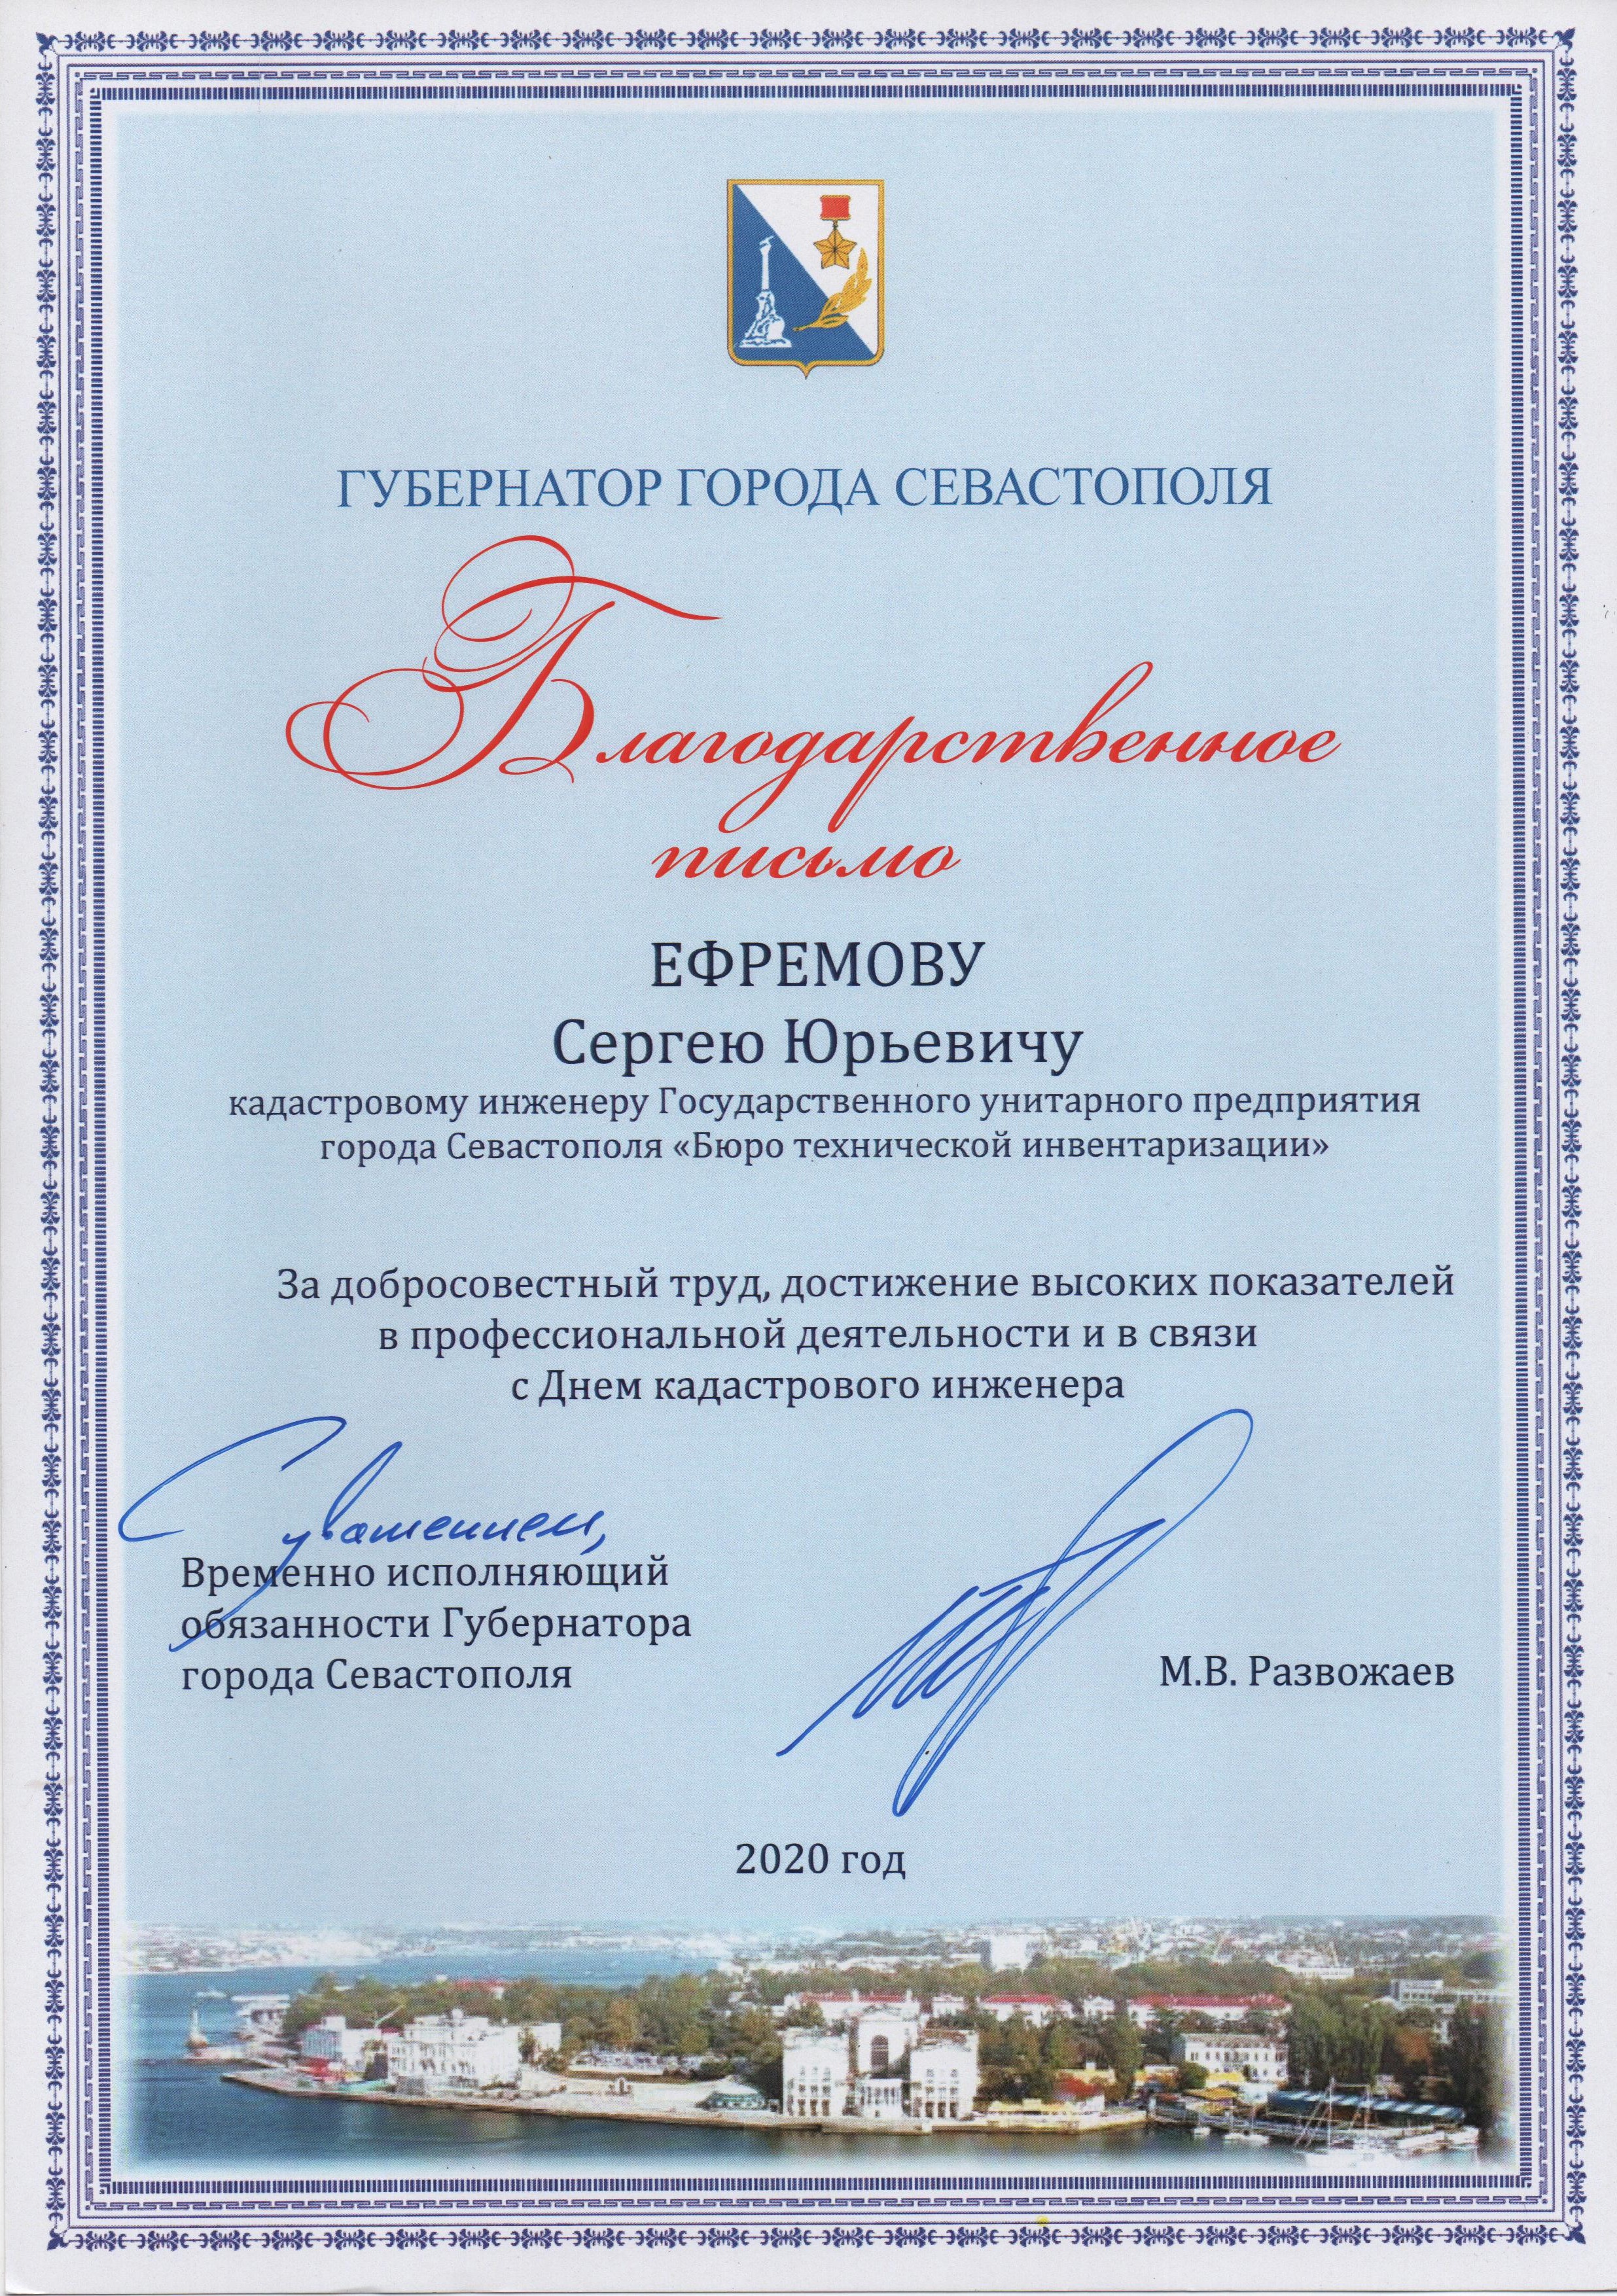 Благодарственное письмо Ефремову С.Ю. от Врио Губернатора города Севастополя 2020